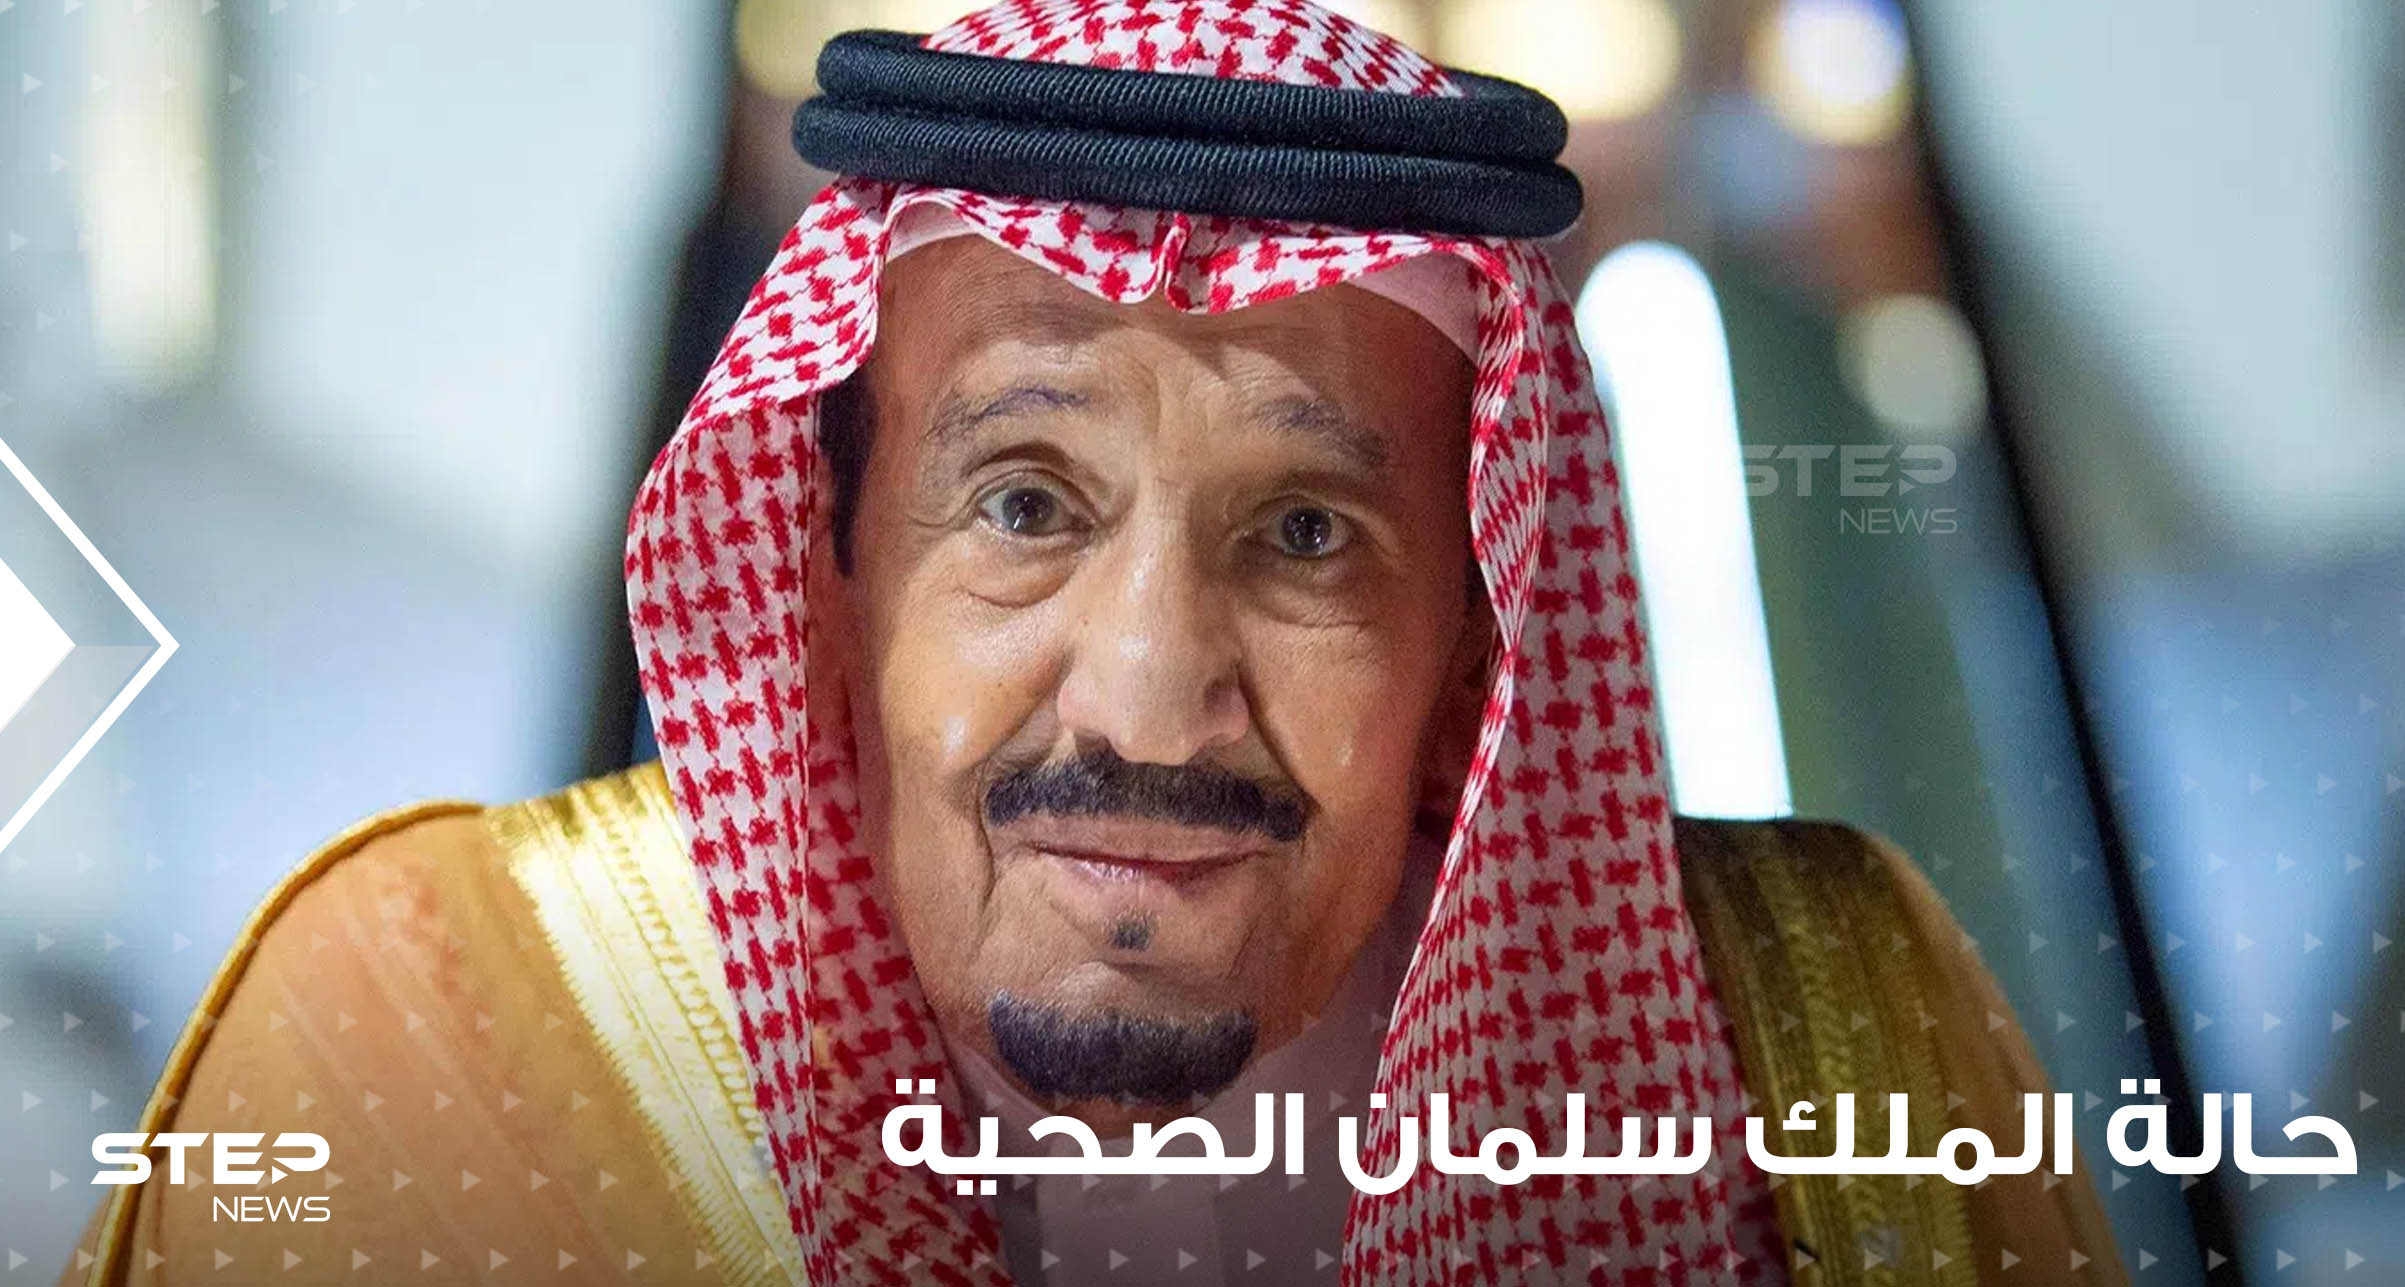 סעודיה חושפת את הסיבה לכניסתו של המלך סלמאן לבית החולים ואת תוצאות בדיקותיו